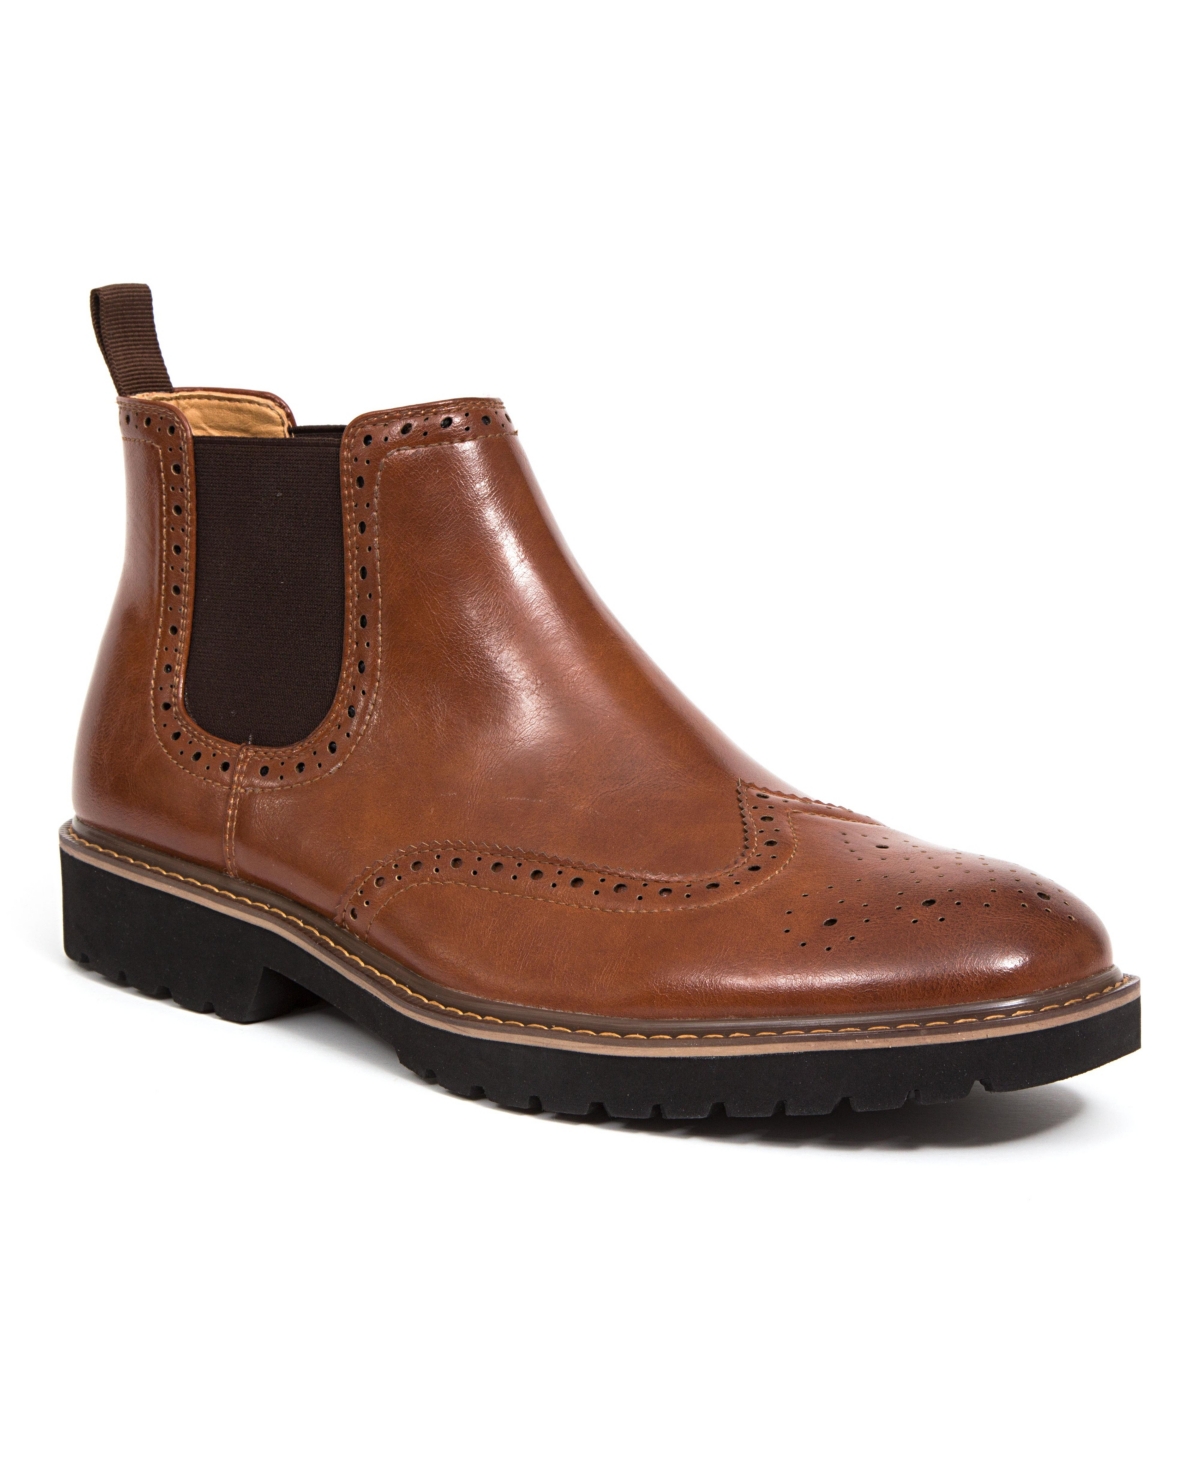 Men's Brayden Dress Comfort Chelsea Boots - Brown